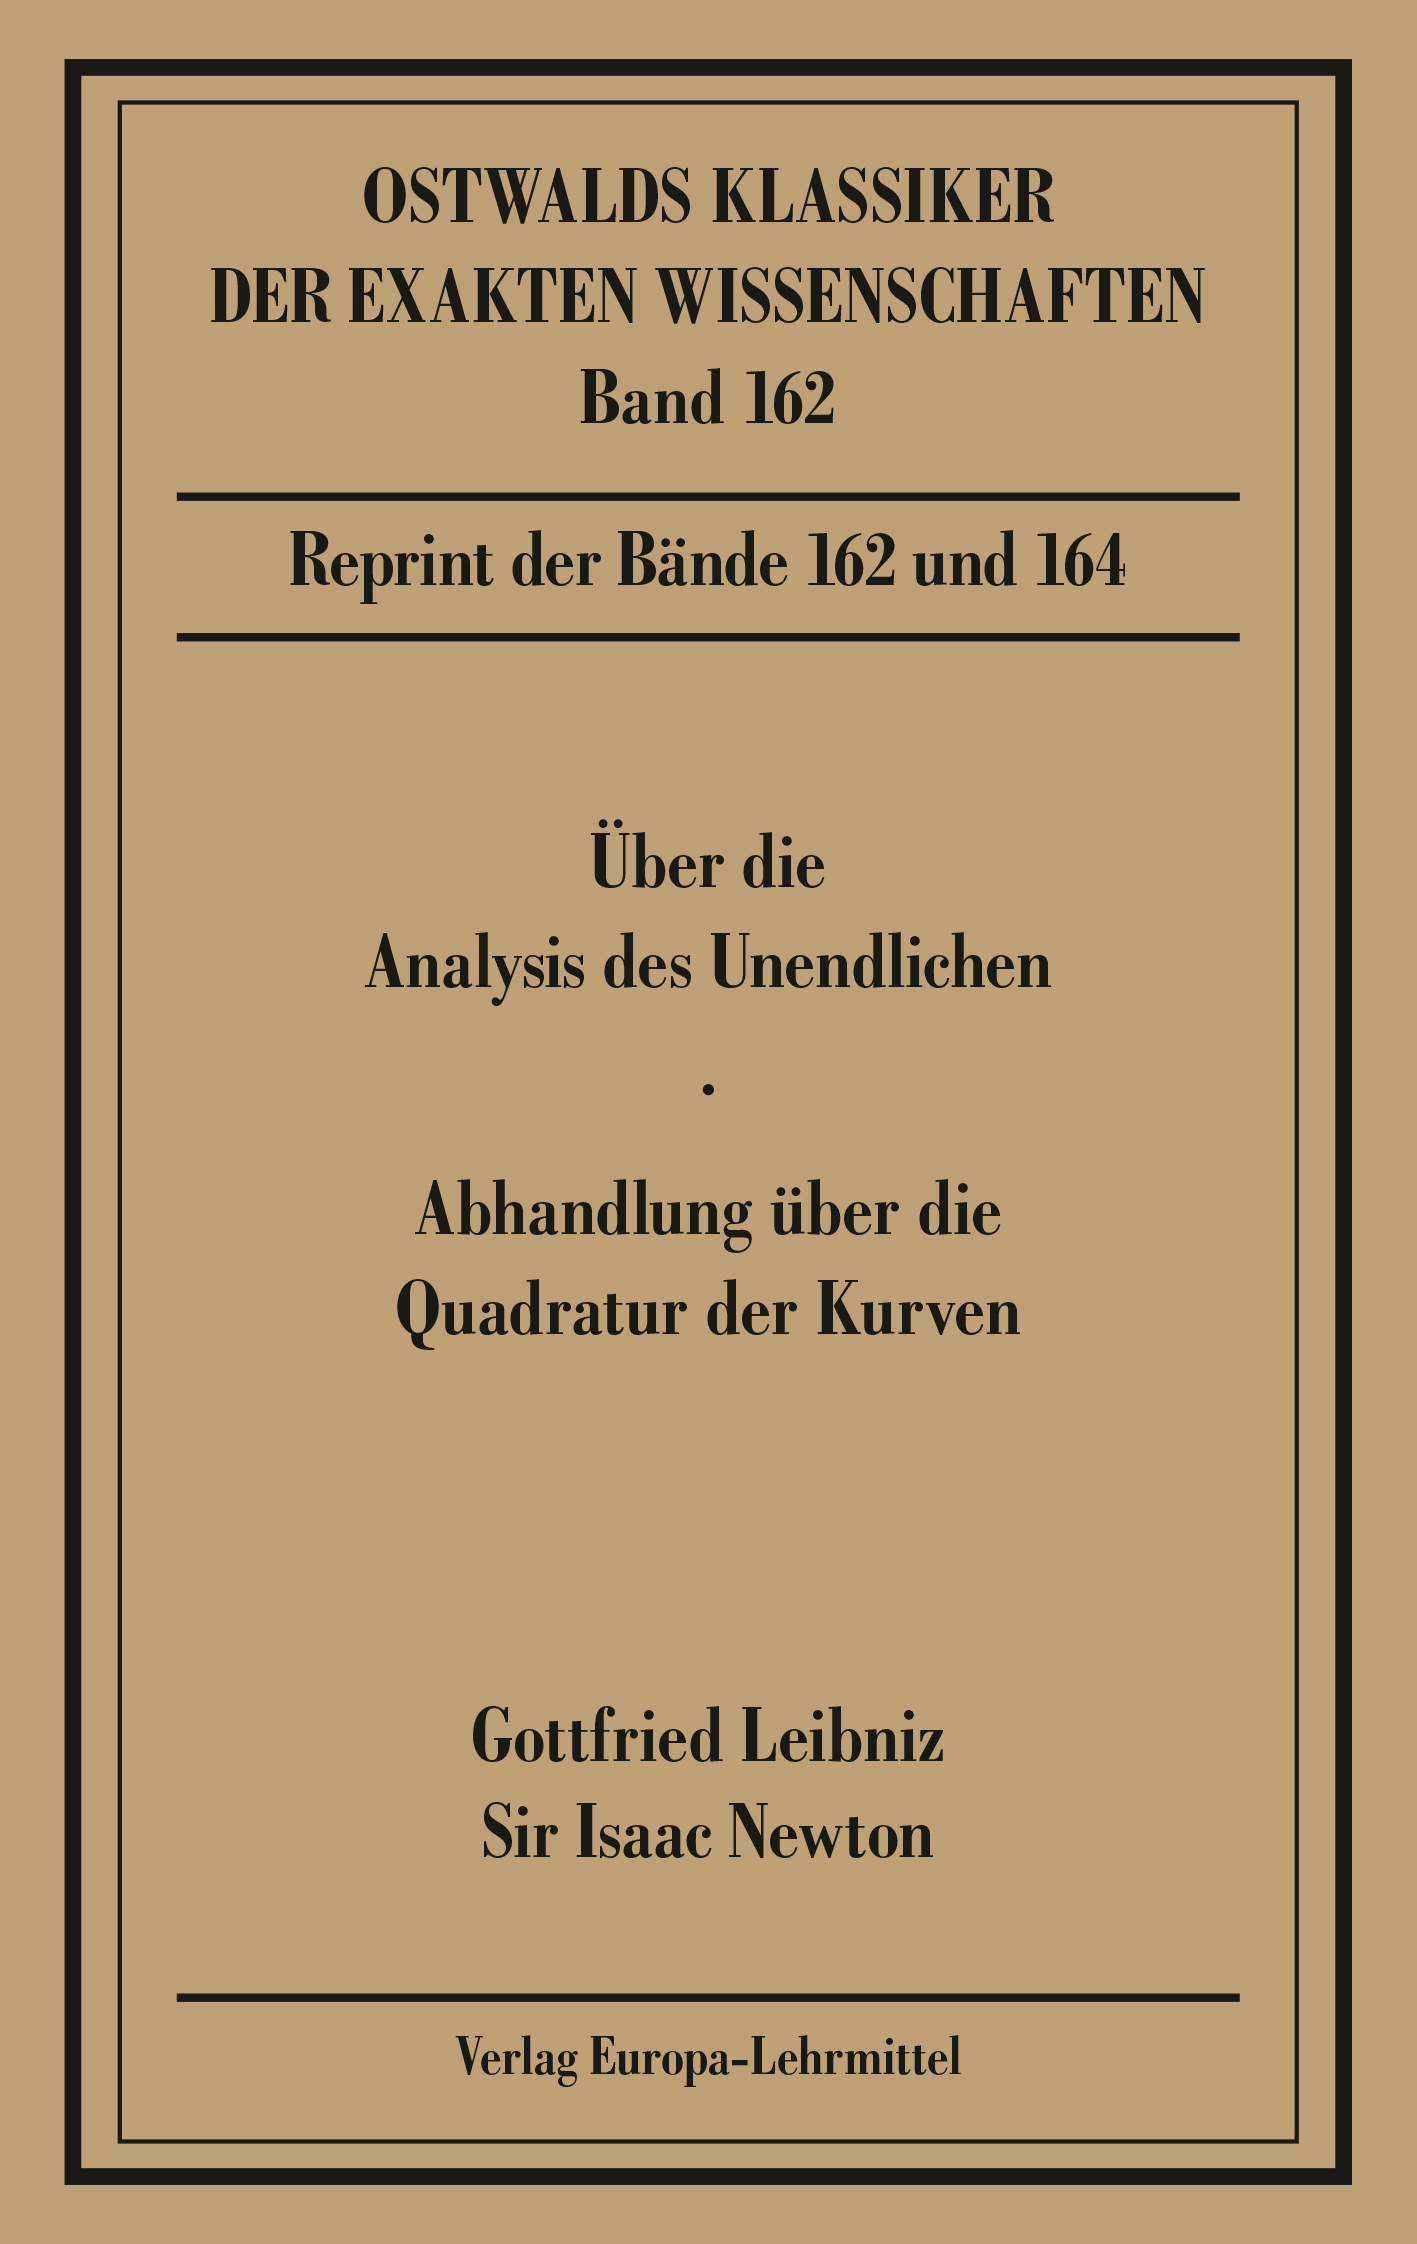 Über die Analysis (Leibniz, Newton)